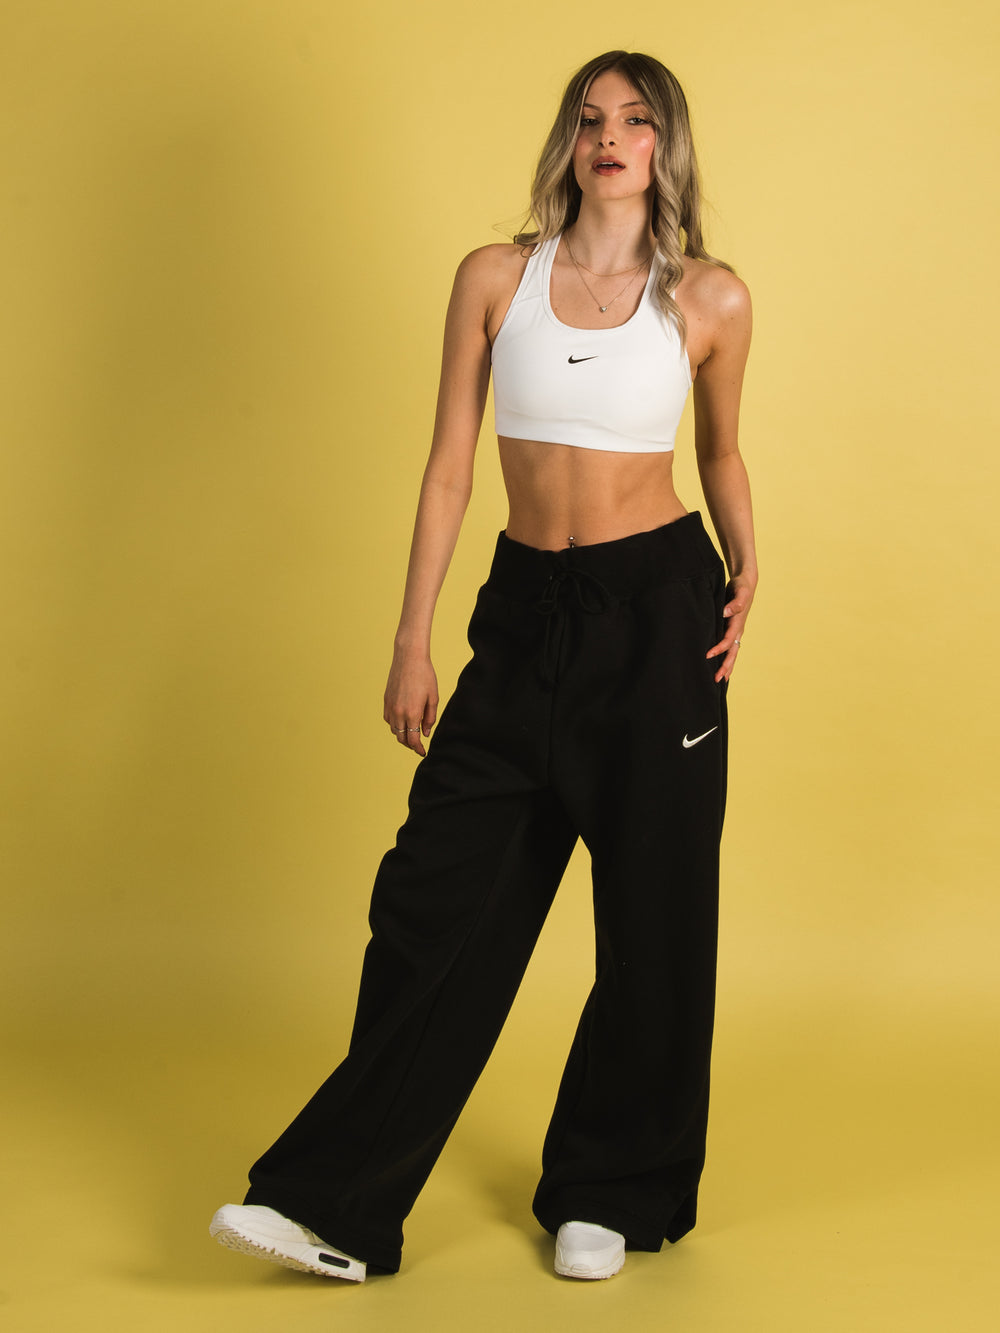 Pants and jeans Nike Sportswear Phoenix Fleece Women's High